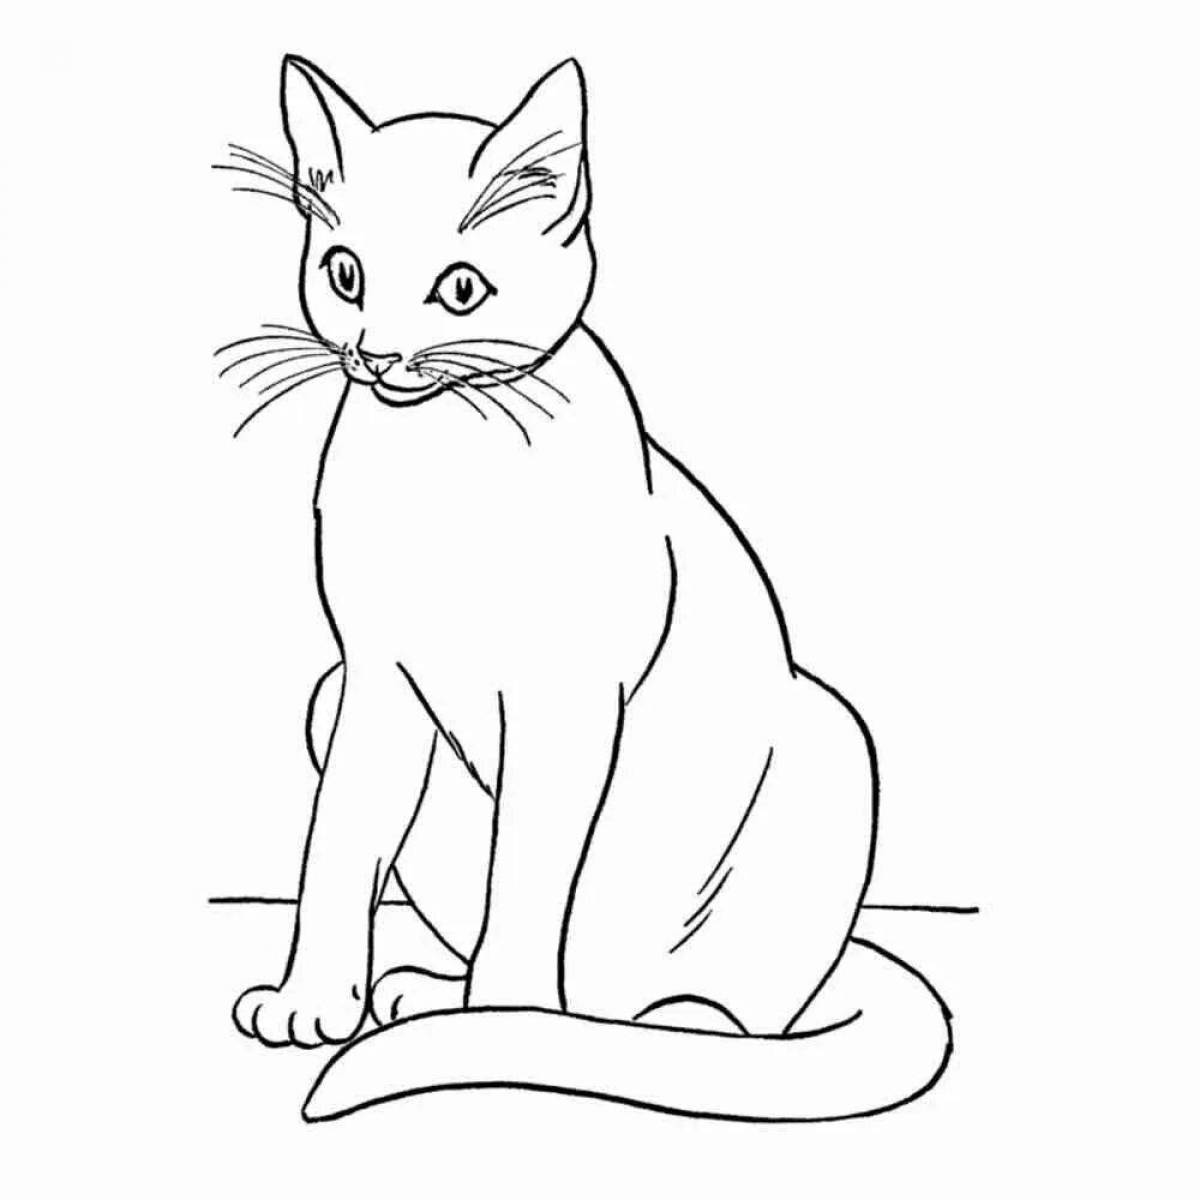 Экзотическая раскраска рисунок кошки